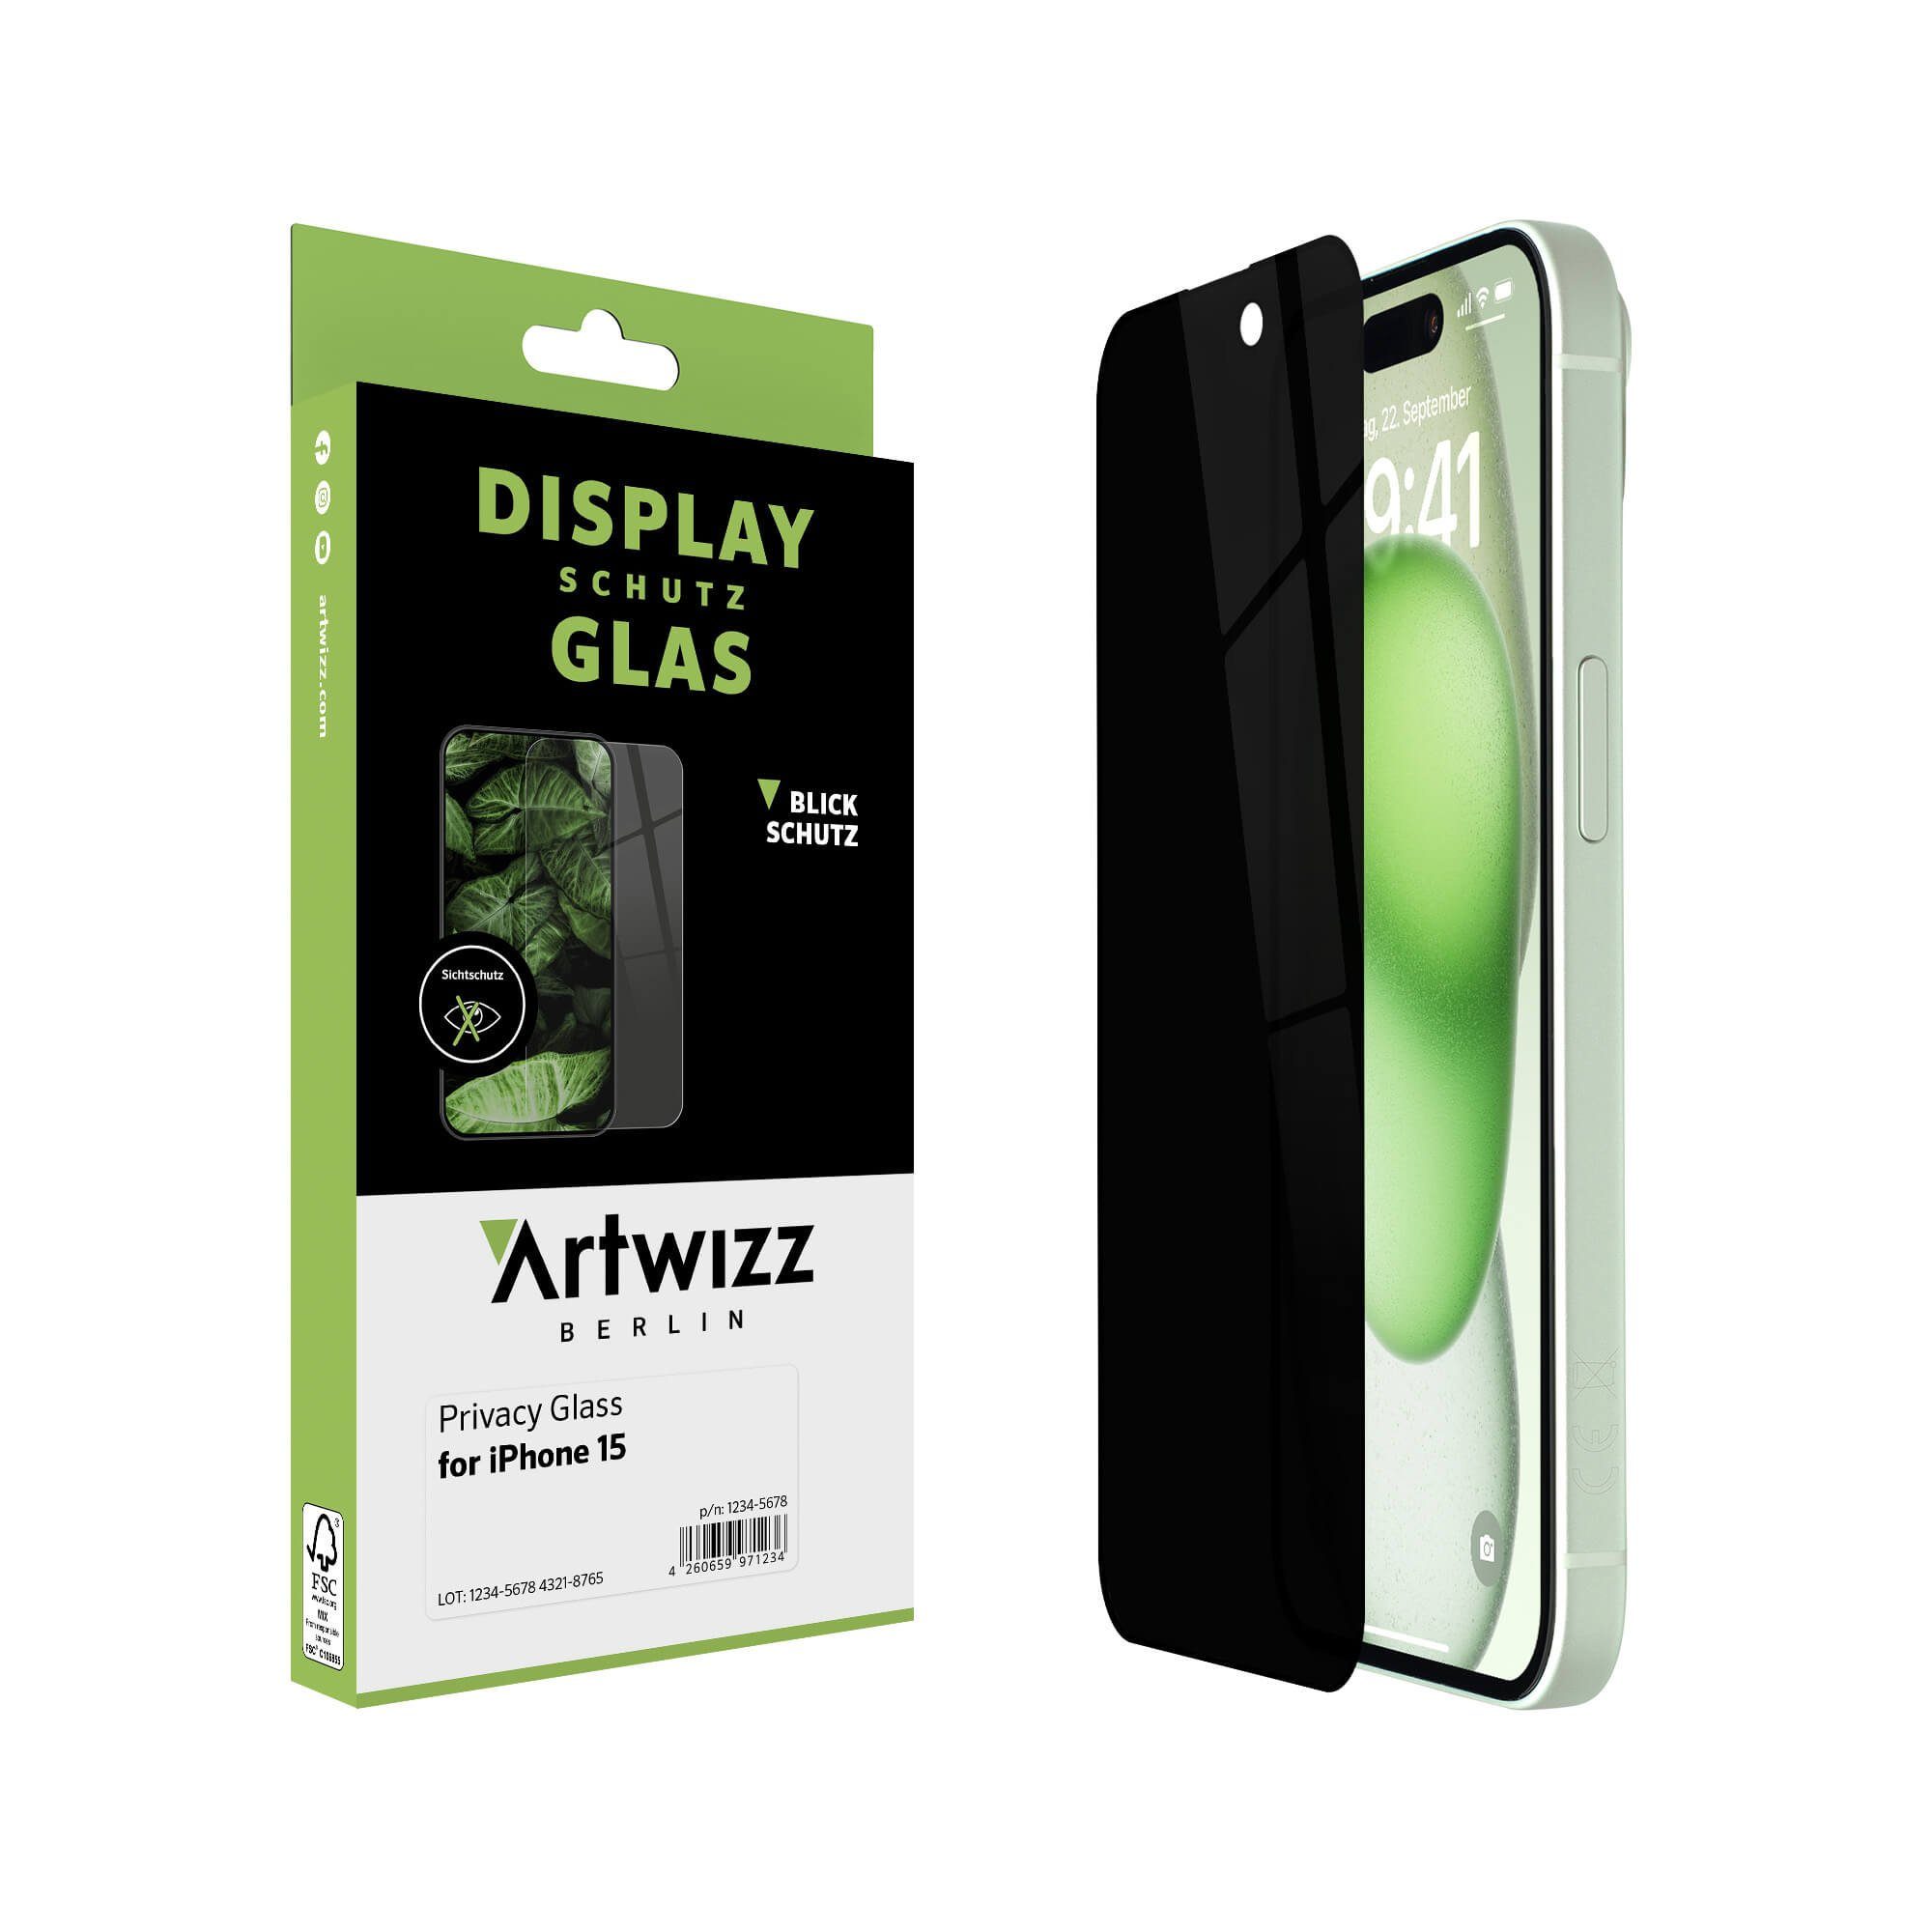 Artwizz Sichtschutzfolie PrivacyGlass, Displayschutz mit Blickschutz aus 100% Sicherheitsglas, iPhone 15